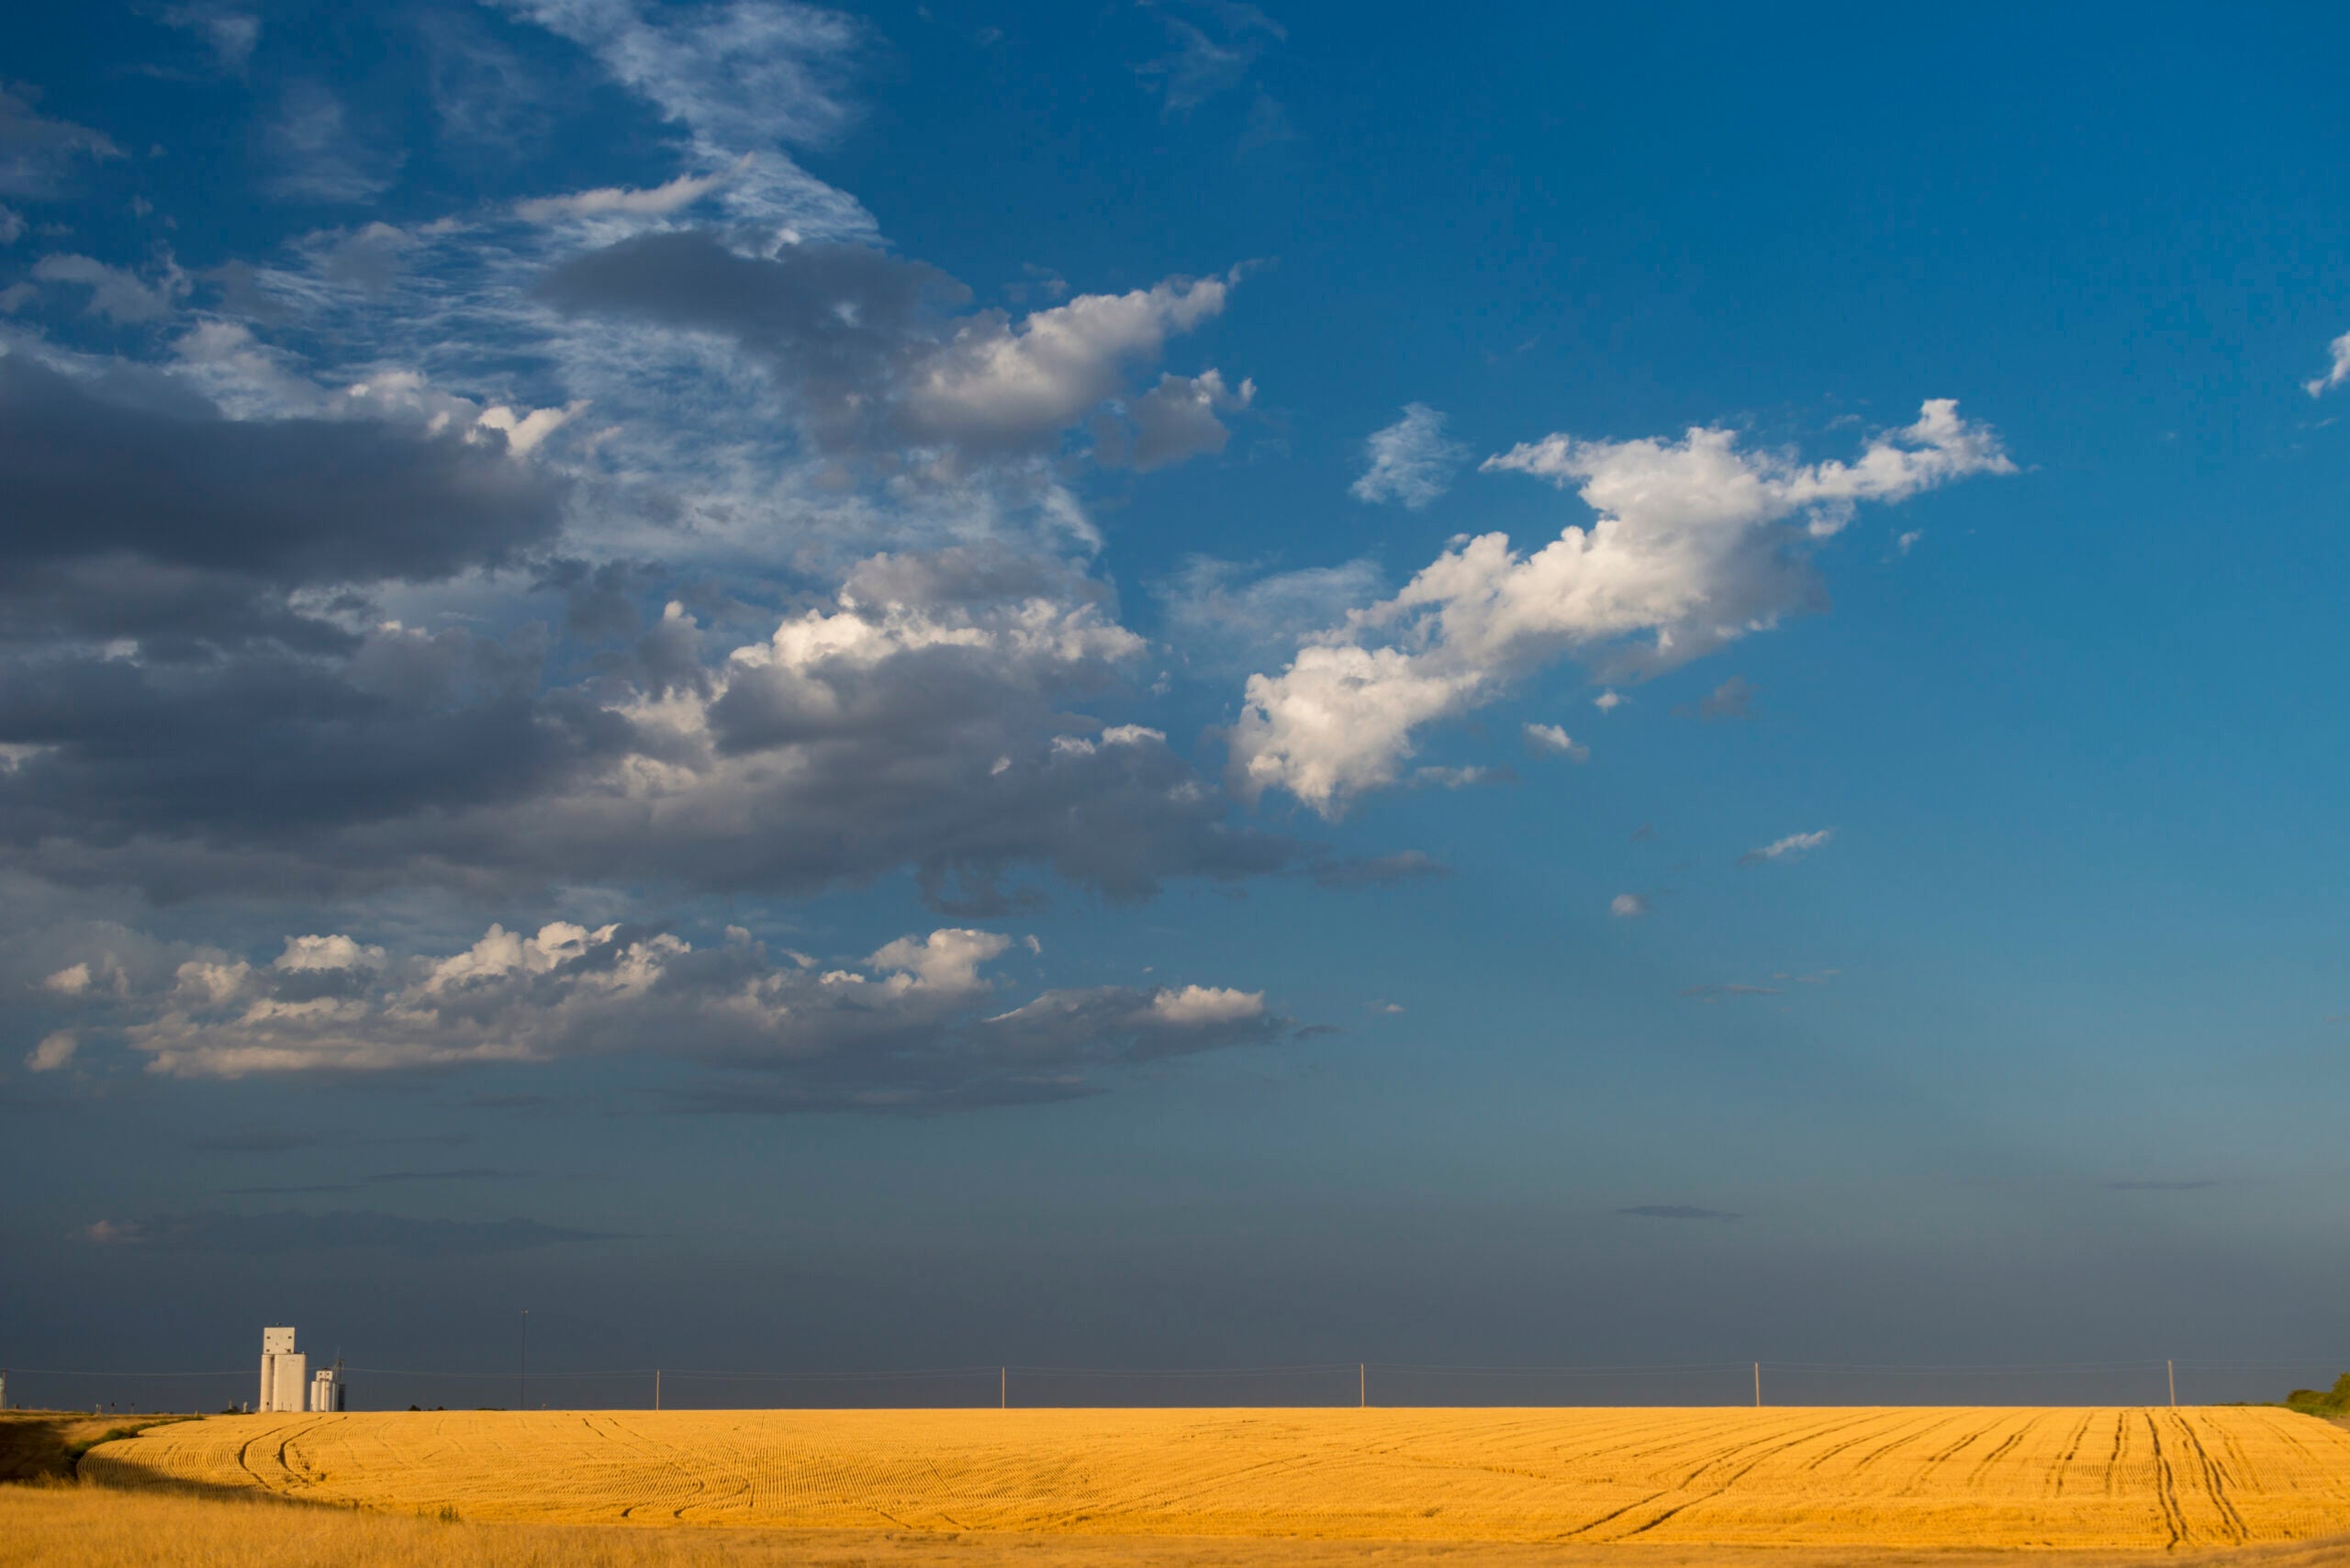 Grain silo over a golden wheat field